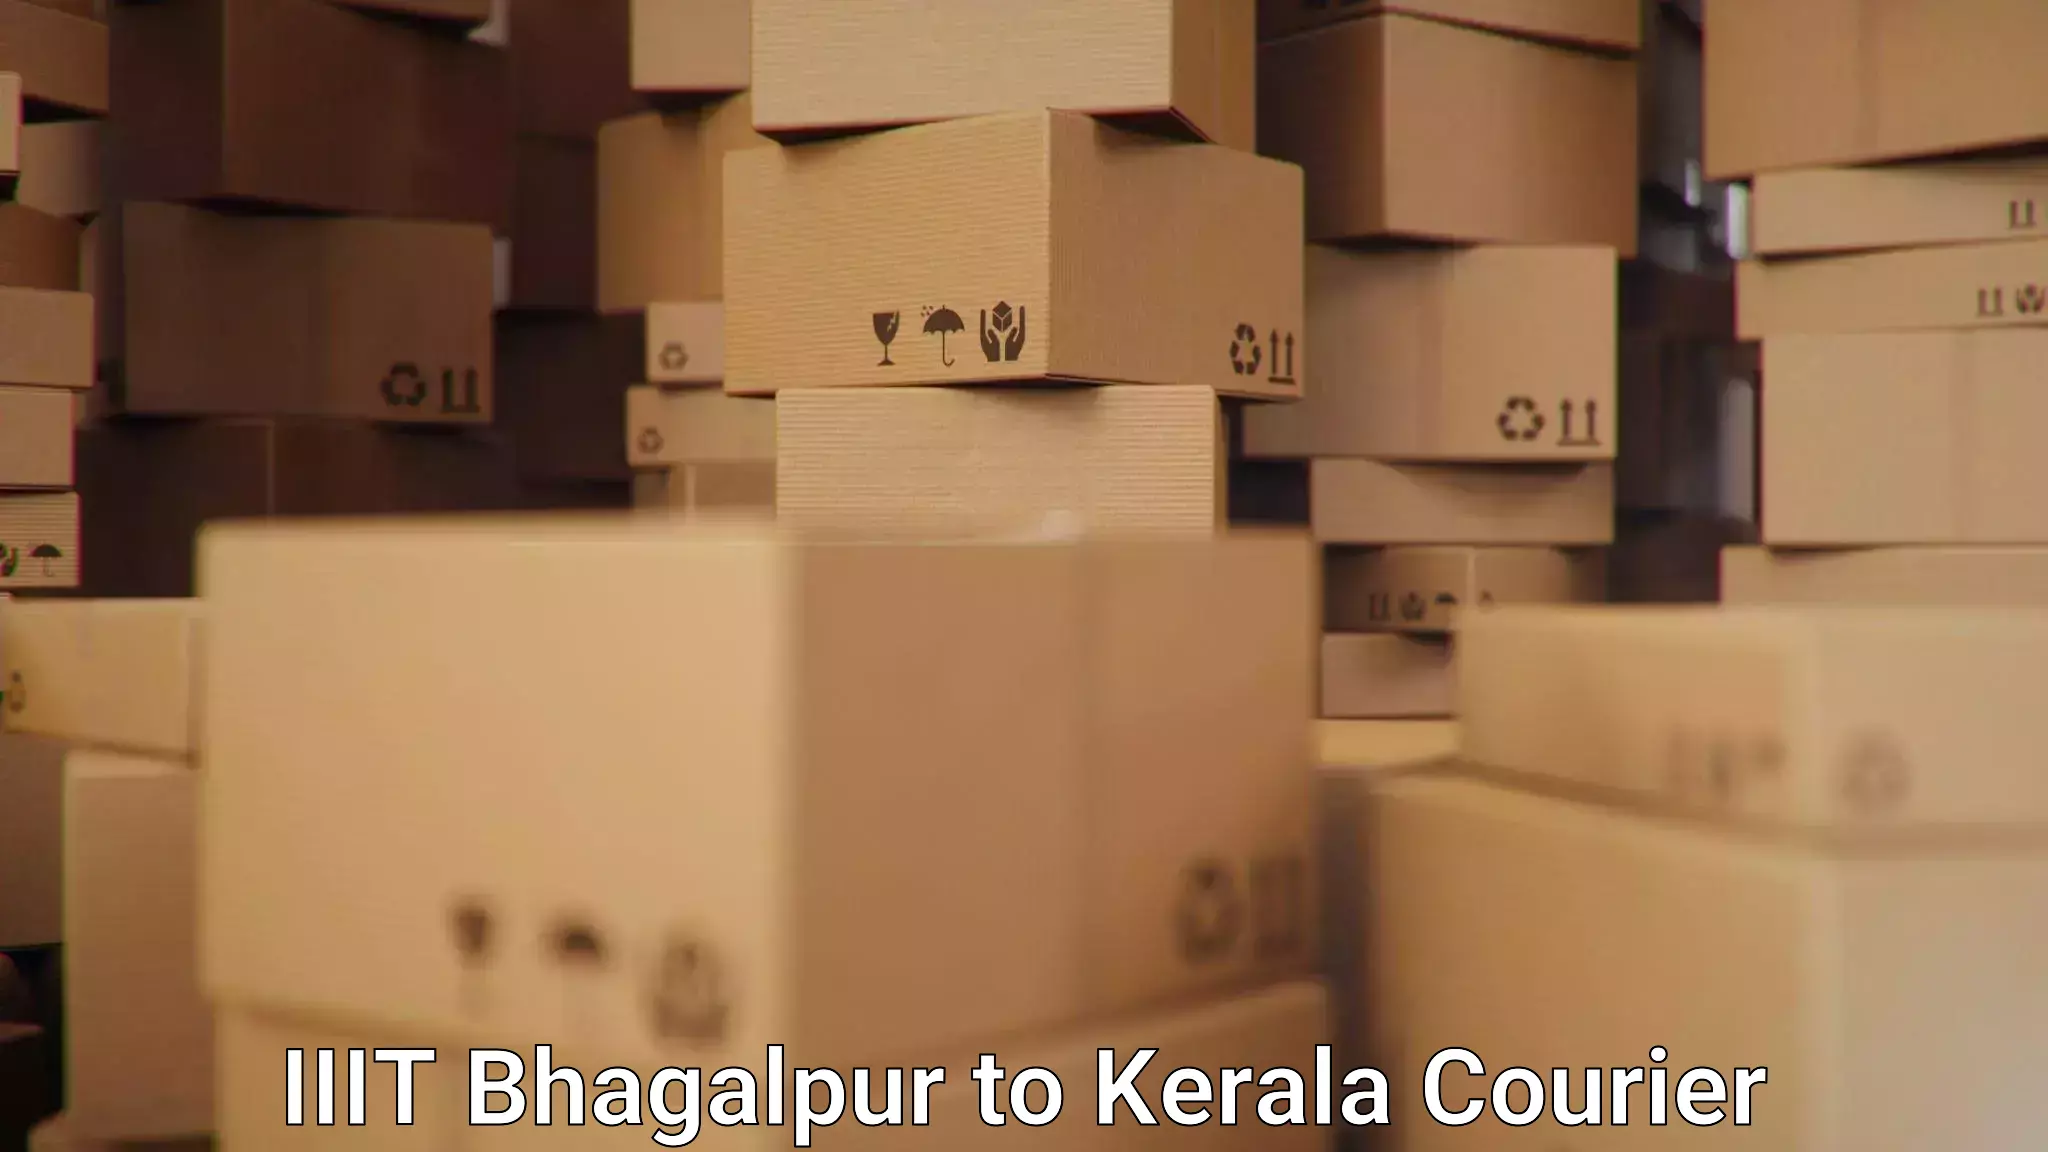 High-priority parcel service IIIT Bhagalpur to Perumbavoor